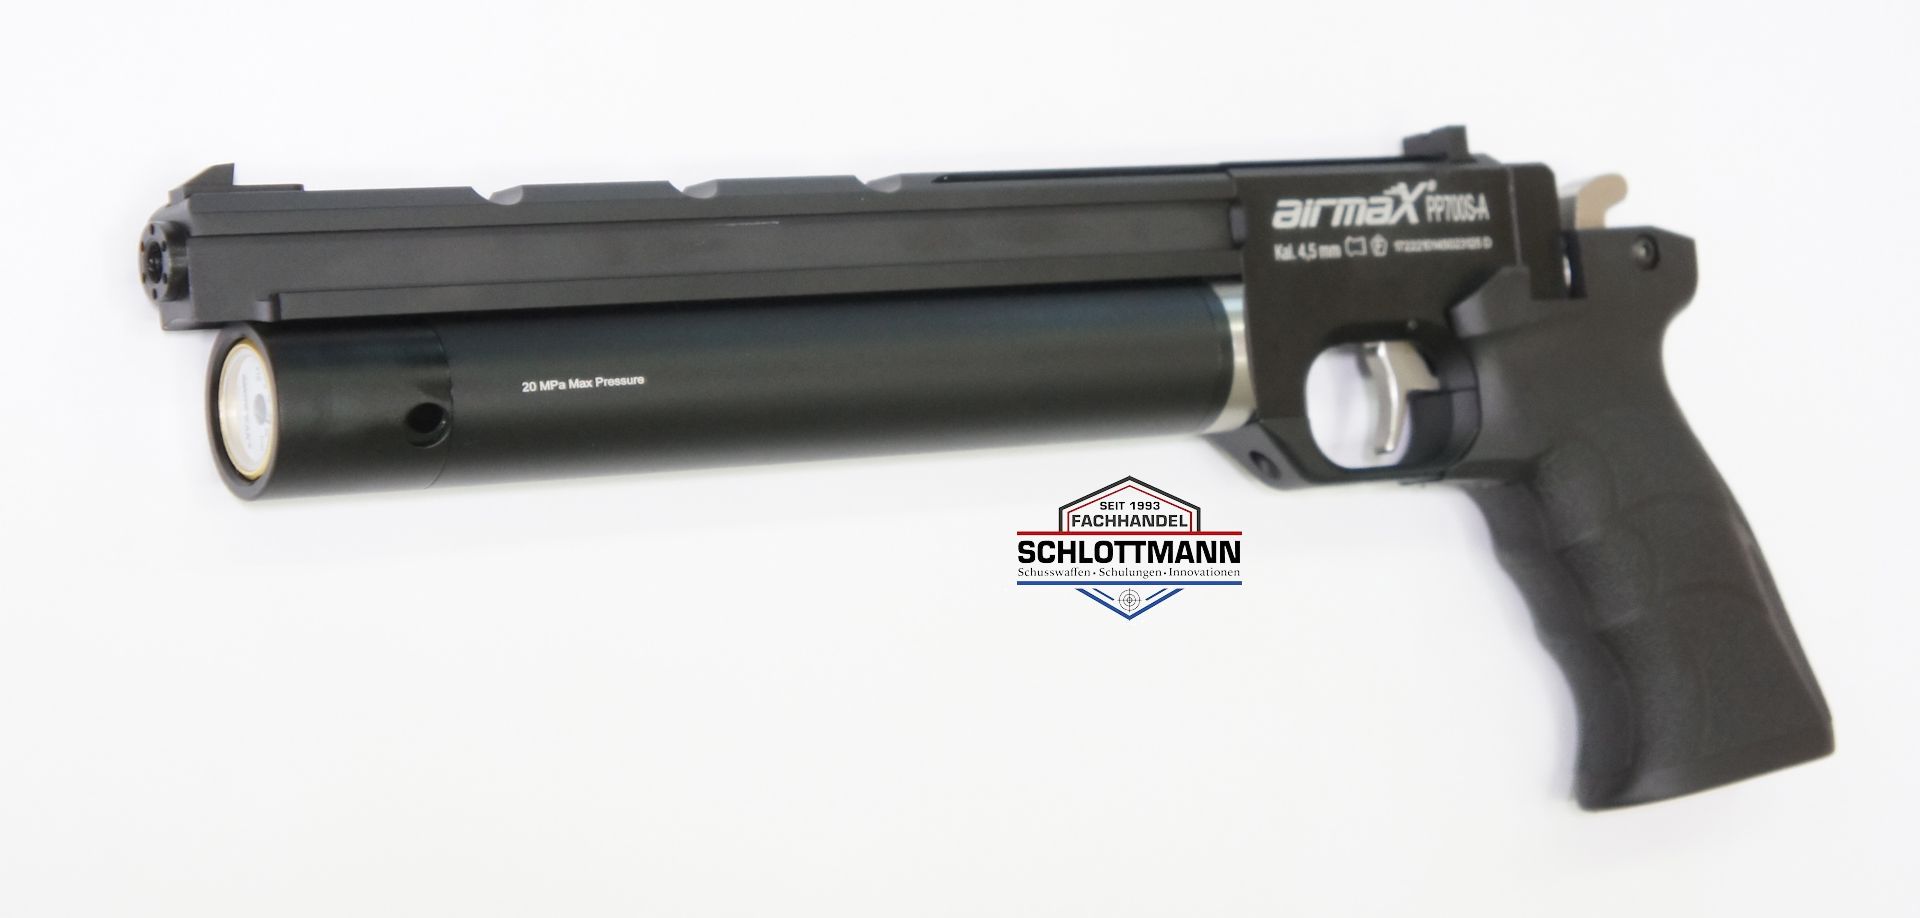 Der Hersteller kombiniert in der Luftpistole PP700S-A gutes Design und Qualität zu einem unschlagbaren Preis.